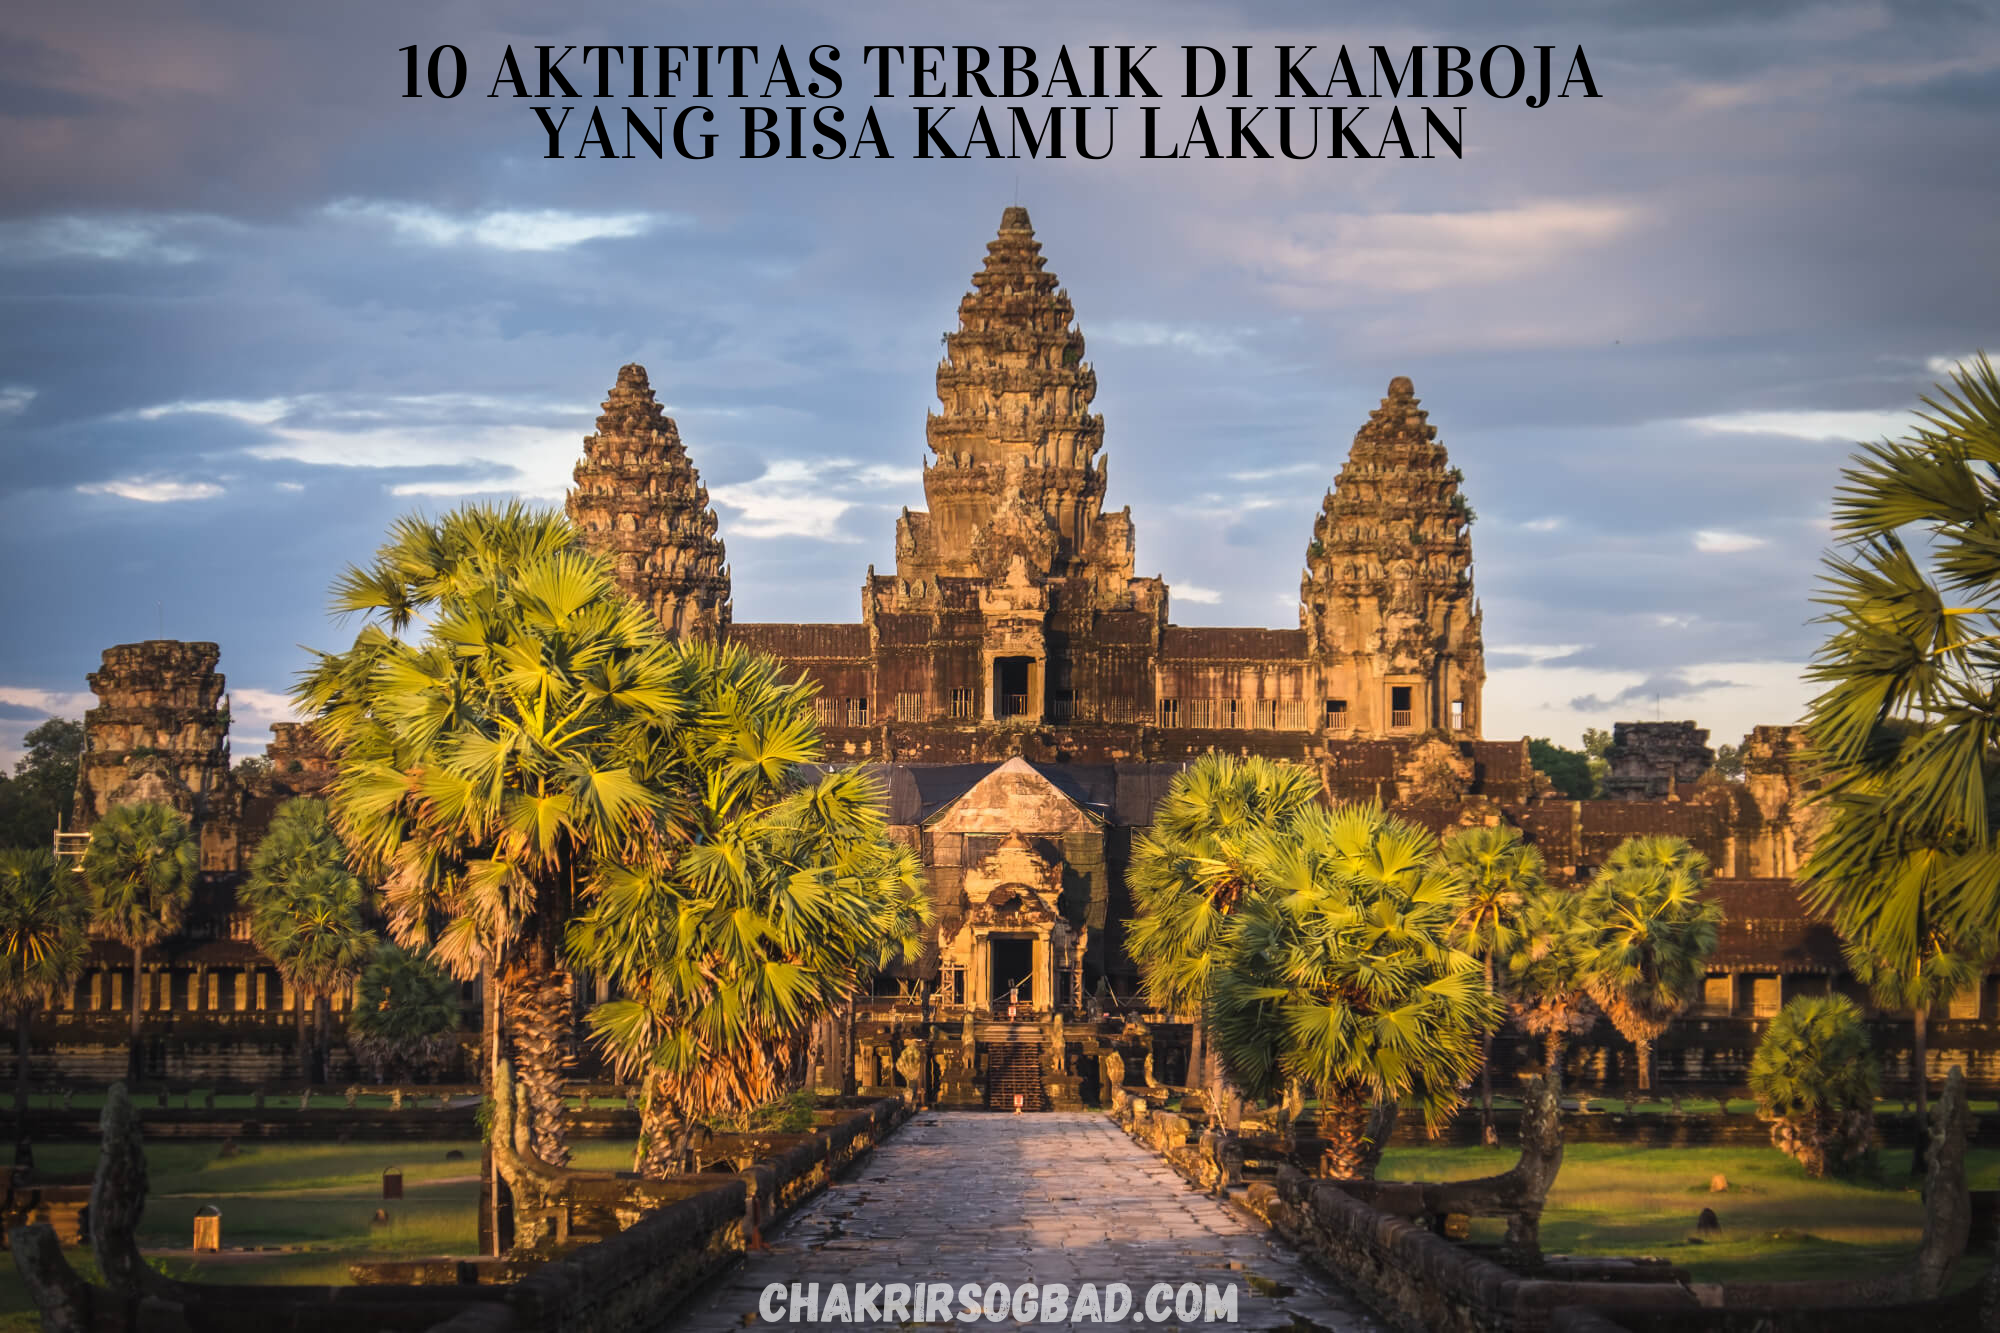 10 Aktifitas Terbaik di Kamboja Yang Bisa Kamu Lakukan